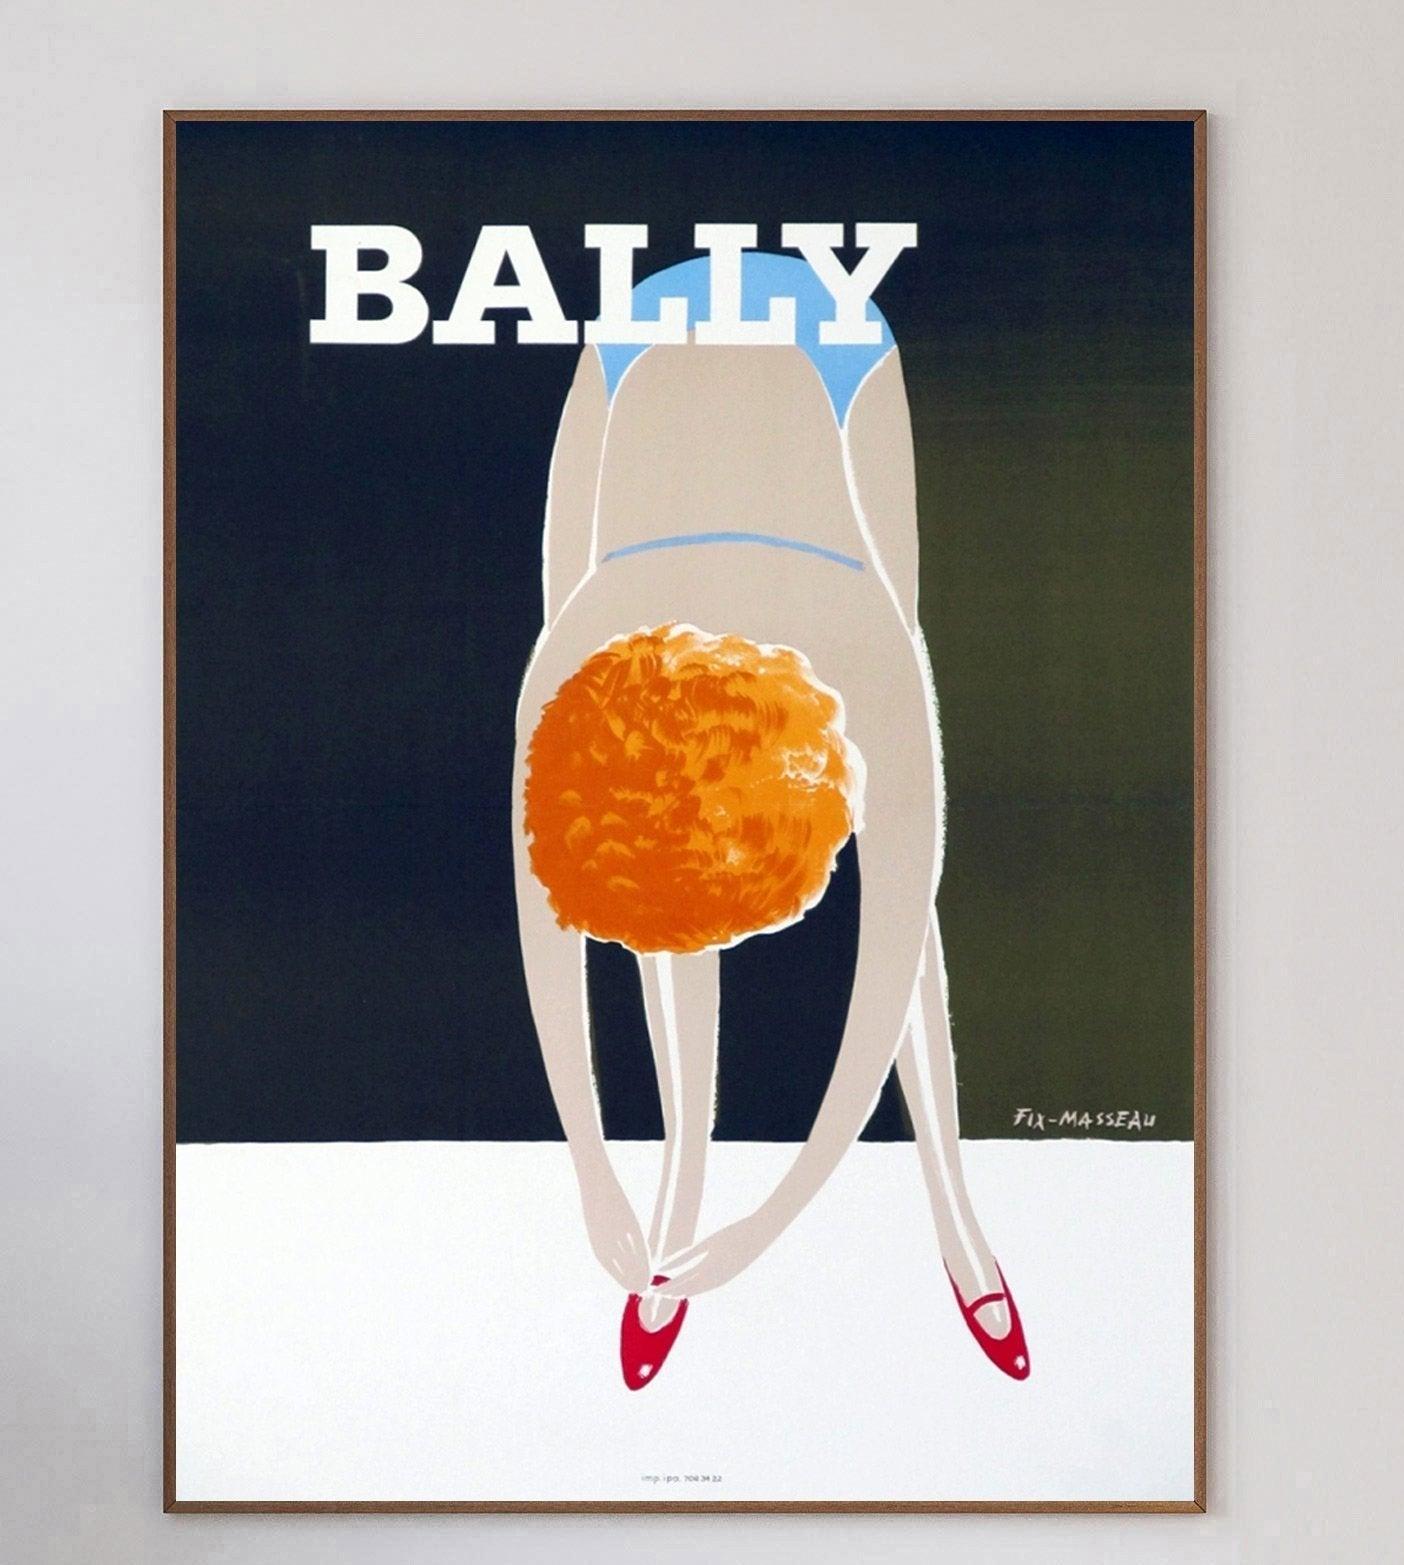 Magnifique affiche de 1980 pour la marque de chaussures de luxe suisses Bally. Avec des œuvres du graphiste et affichiste français Fix-Masseau, connu pour ses collaborations avec le Venice Simplon Orient-Express.

Cette pièce connue sous le nom de